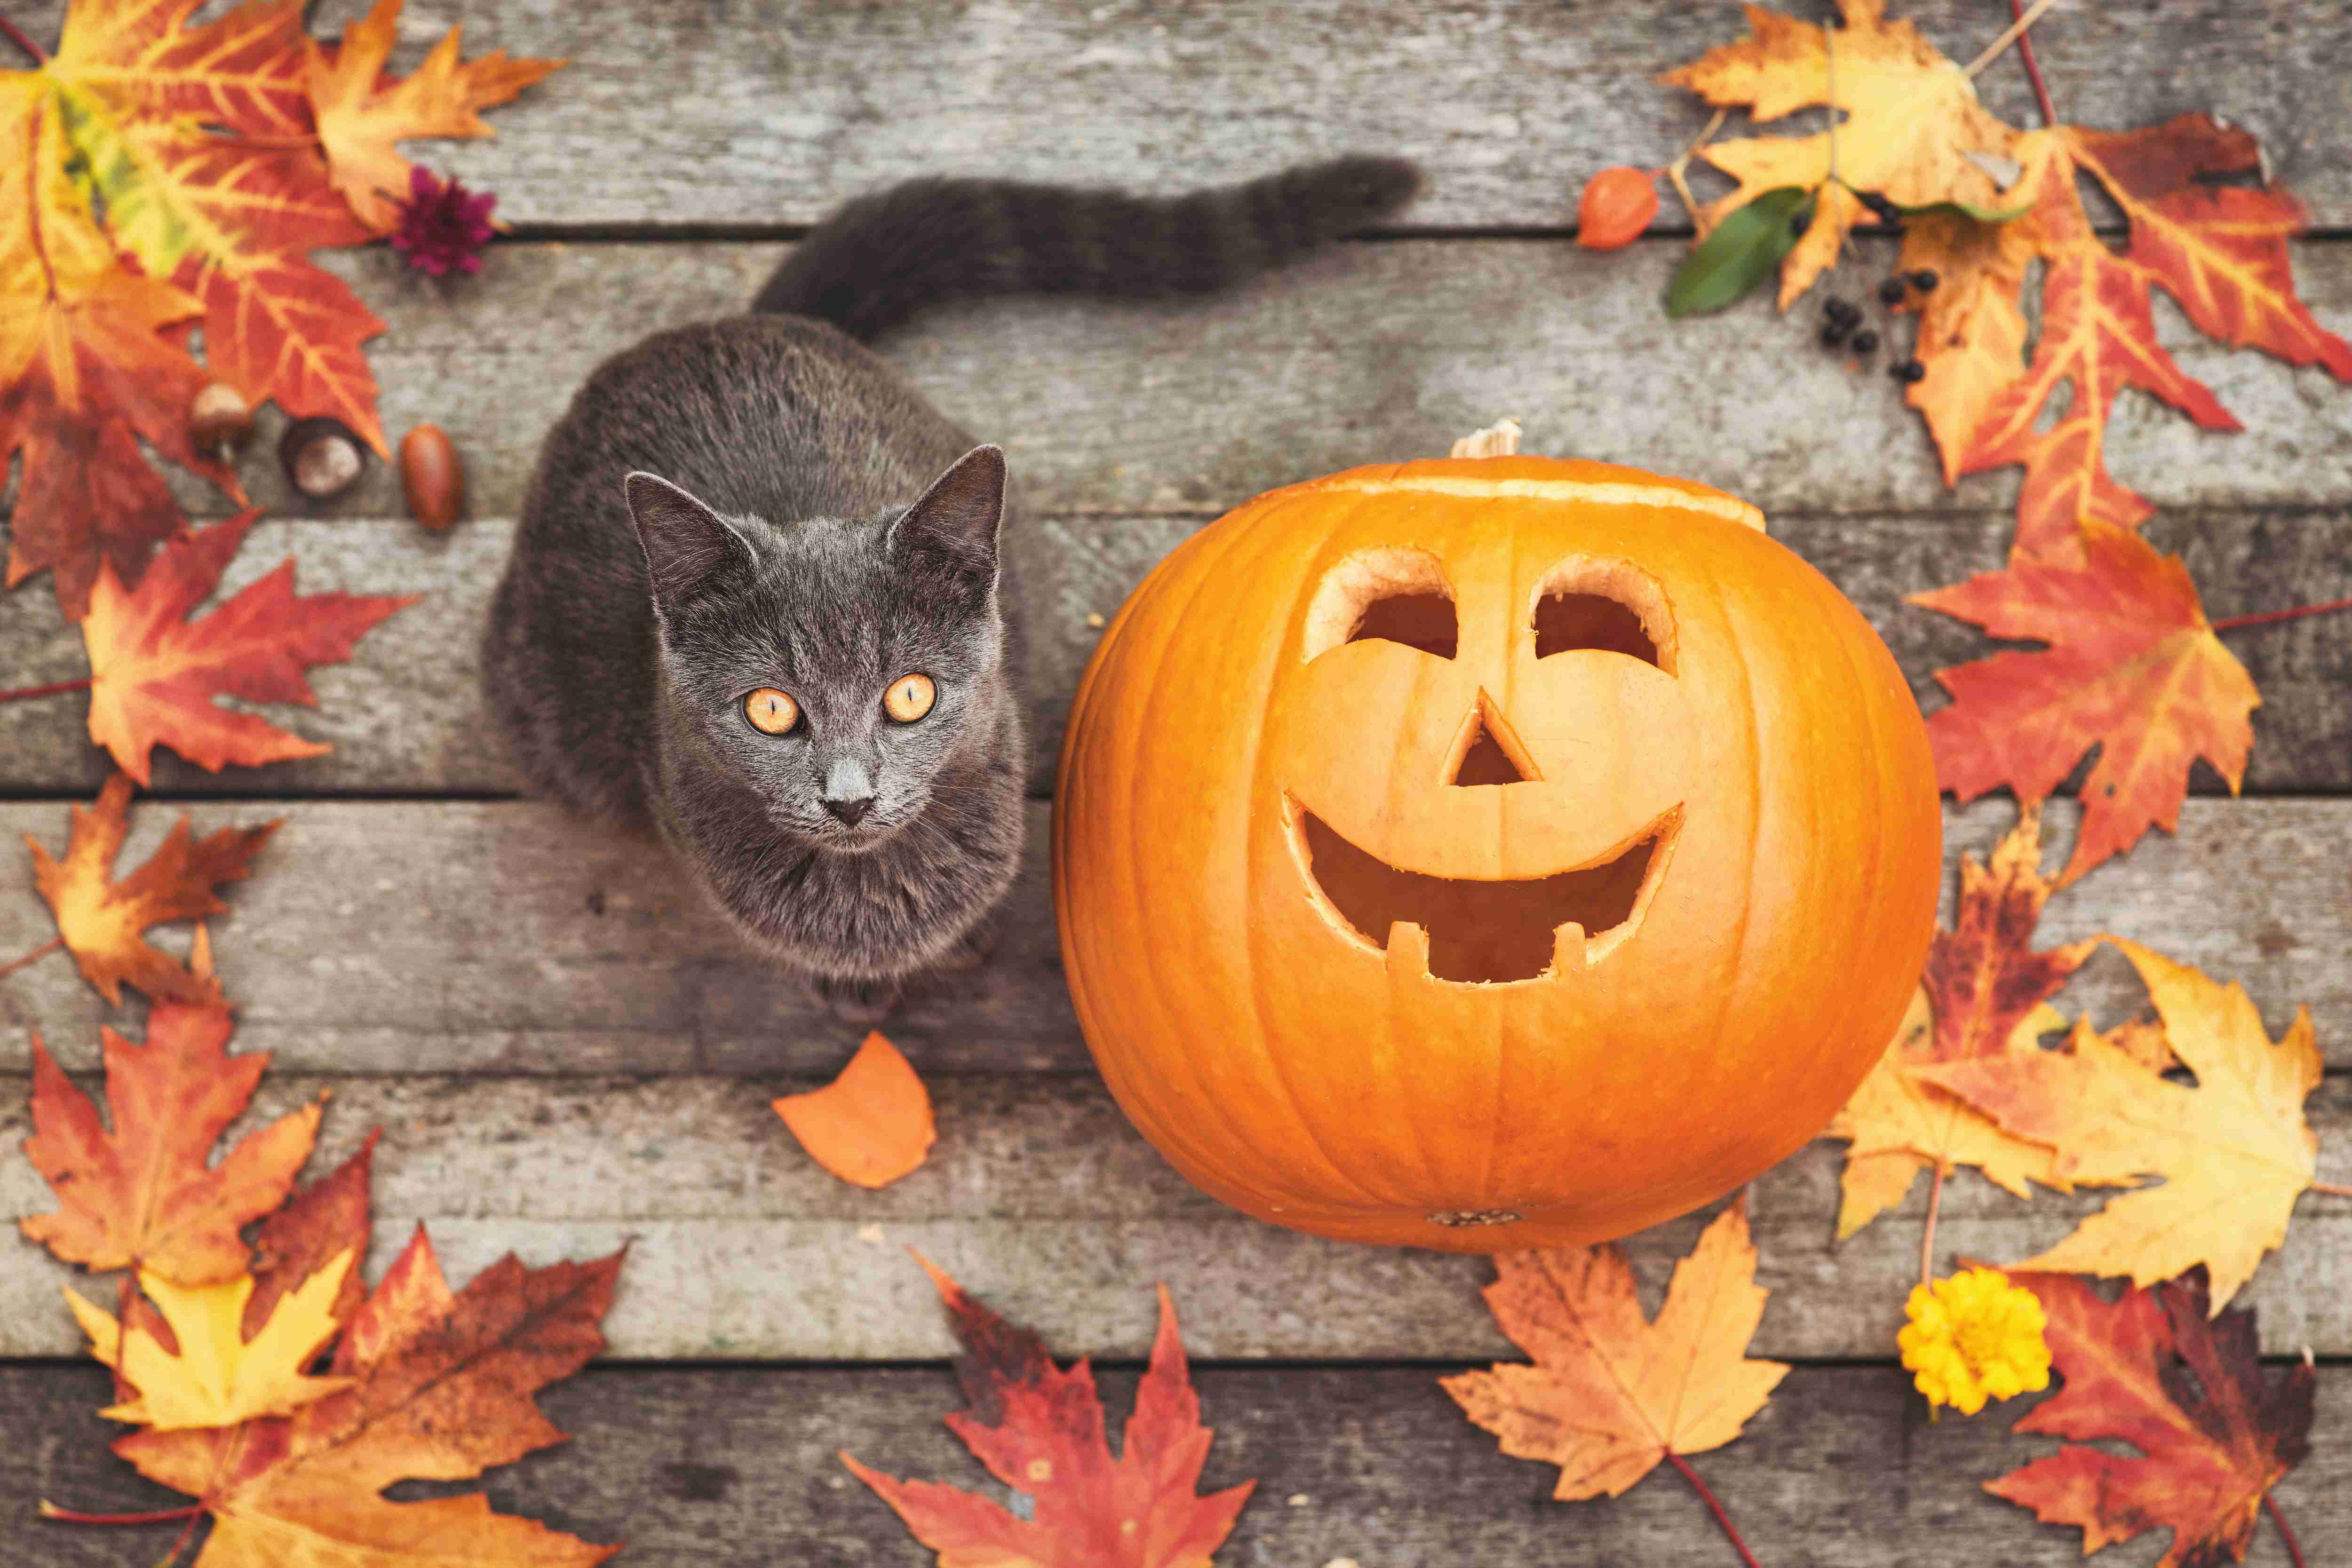 Die Tierarzt-Ecke: Hier ein kleiner Ratgeber, um mit deiner Katze glücklich durch den Herbst zu kommen!